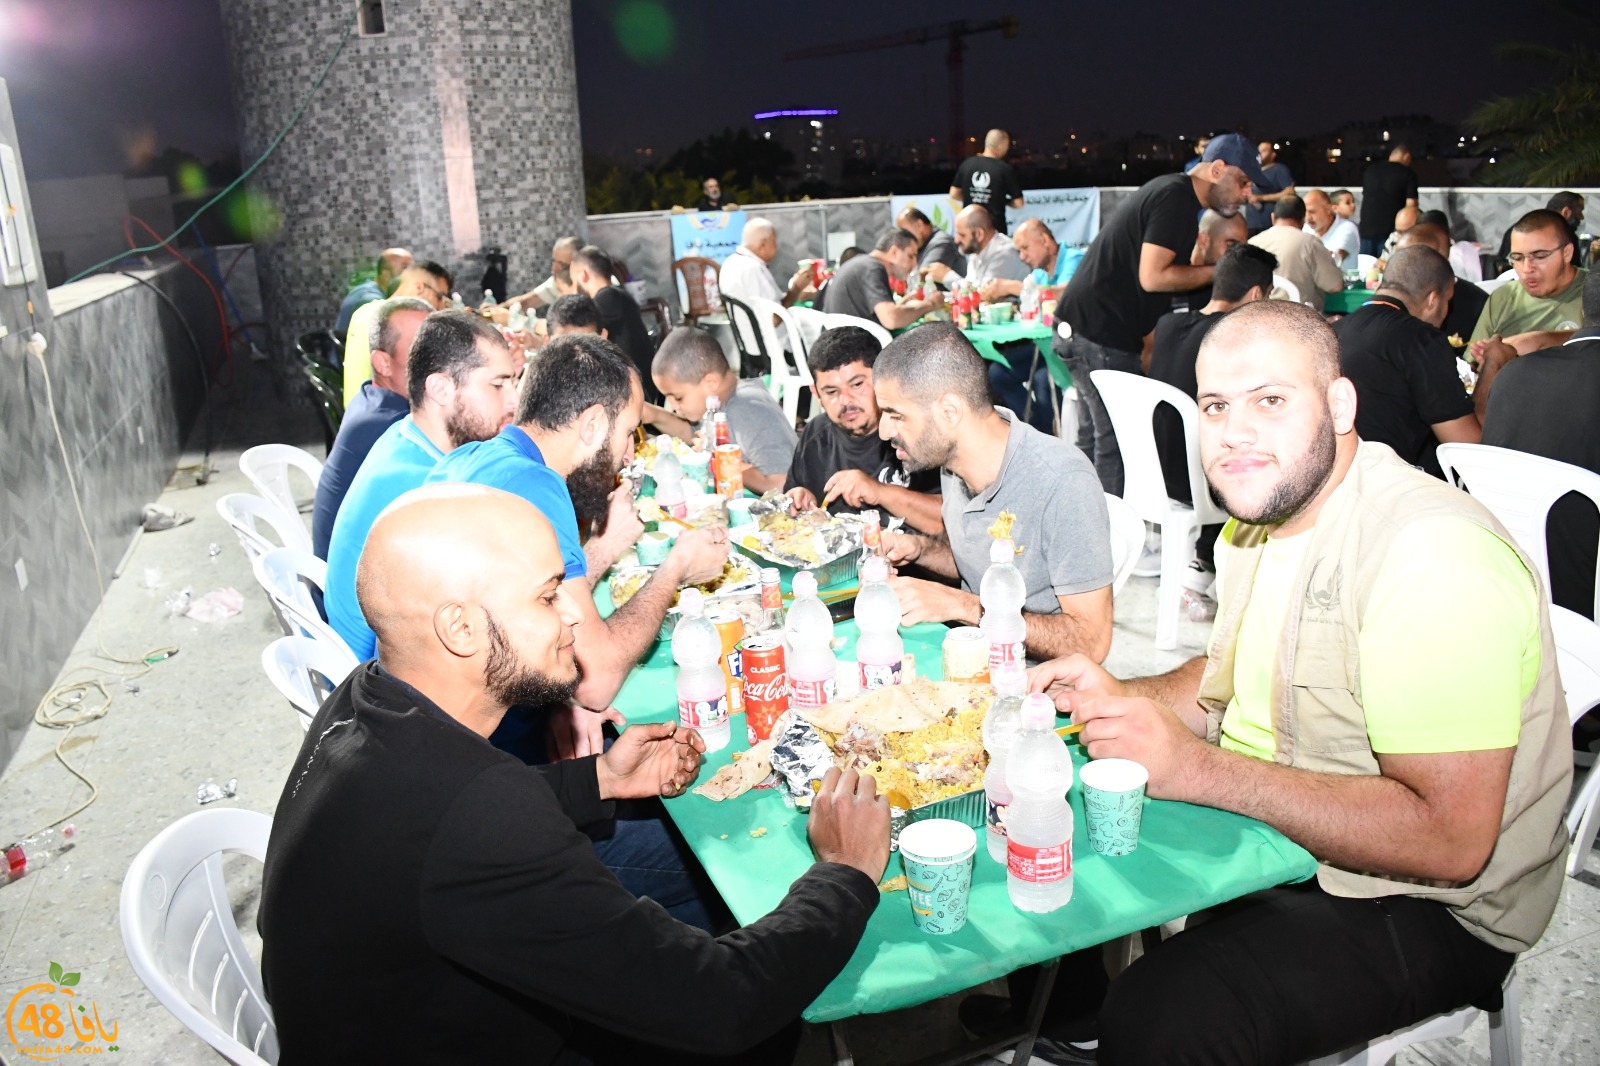  بالفيديو: جمعية يافا تُنظم افطاراً جماعياً لأهالي حي الجبلية في يافا